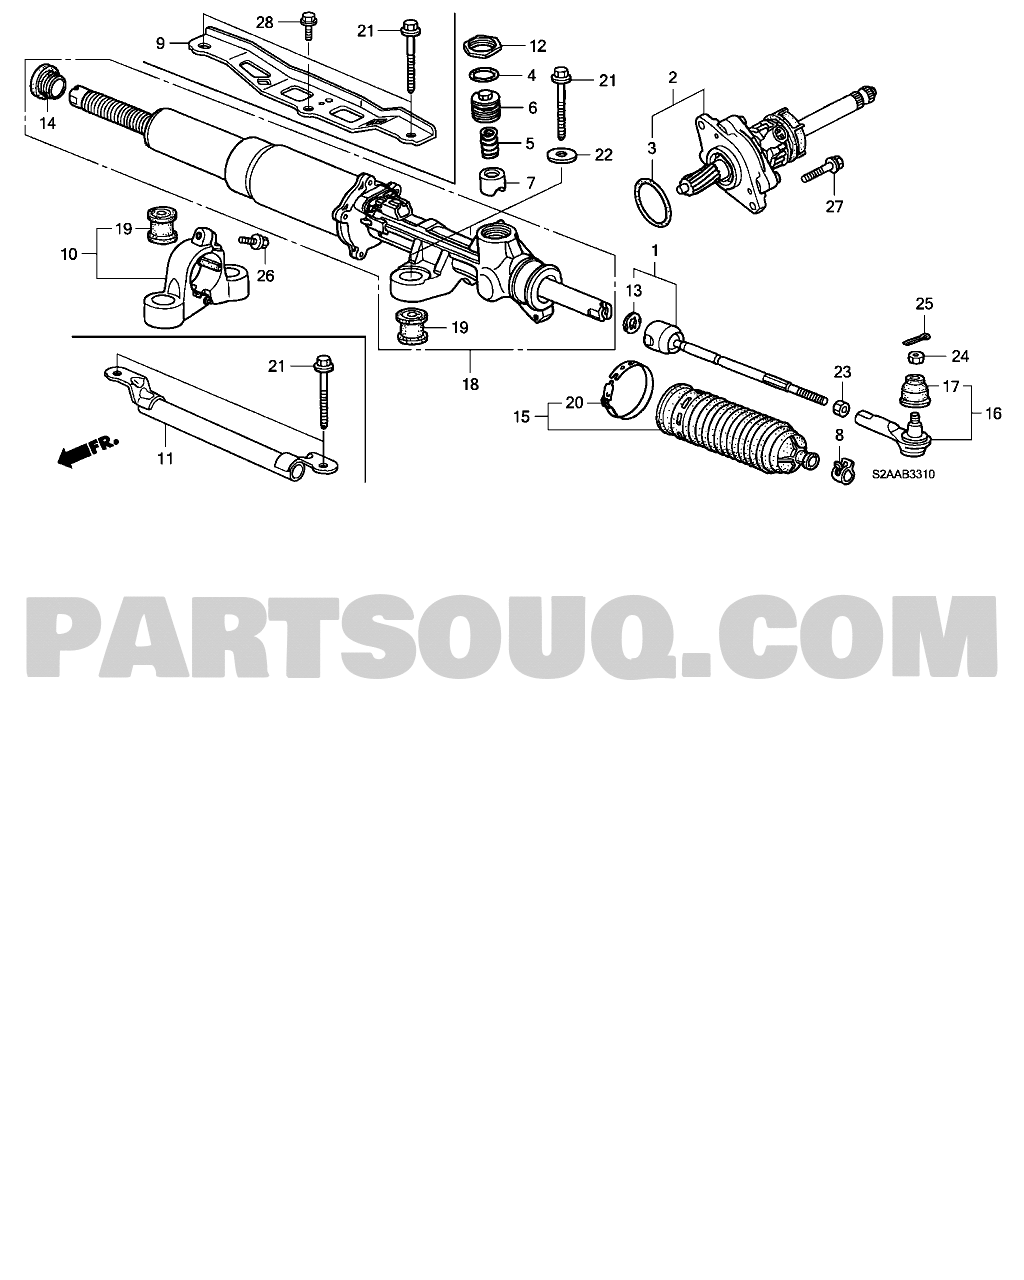 4 CHASSIS | Honda S2000 USA 2008-2009 | Parts Catalogs | PartSouq